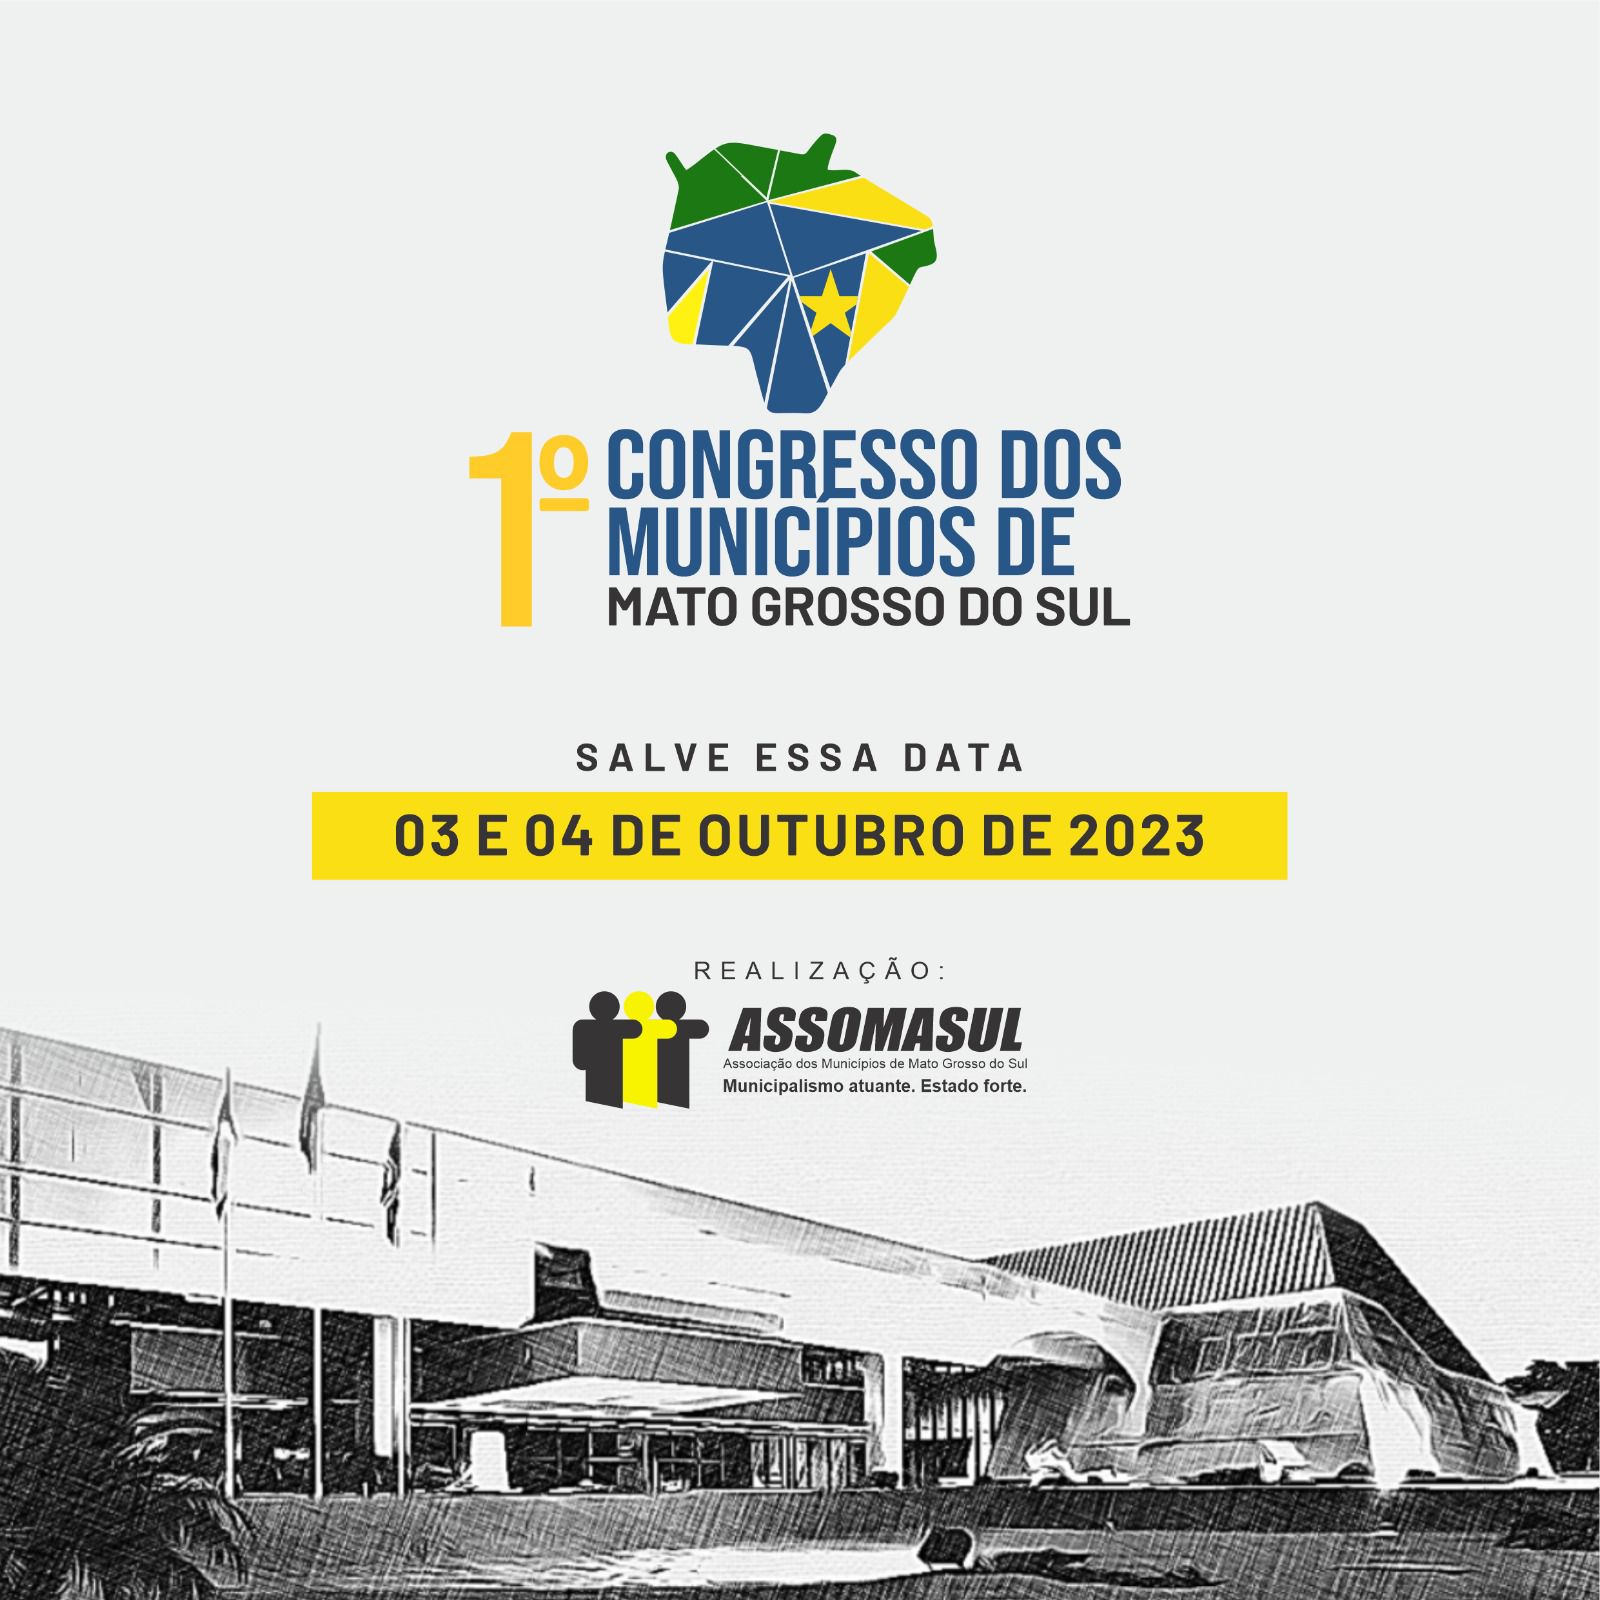 Assomasul anuncia o 1º Congresso dos Municípios de Mato Grosso do Sul: Impulsionando a Inovação na Gestão Pública